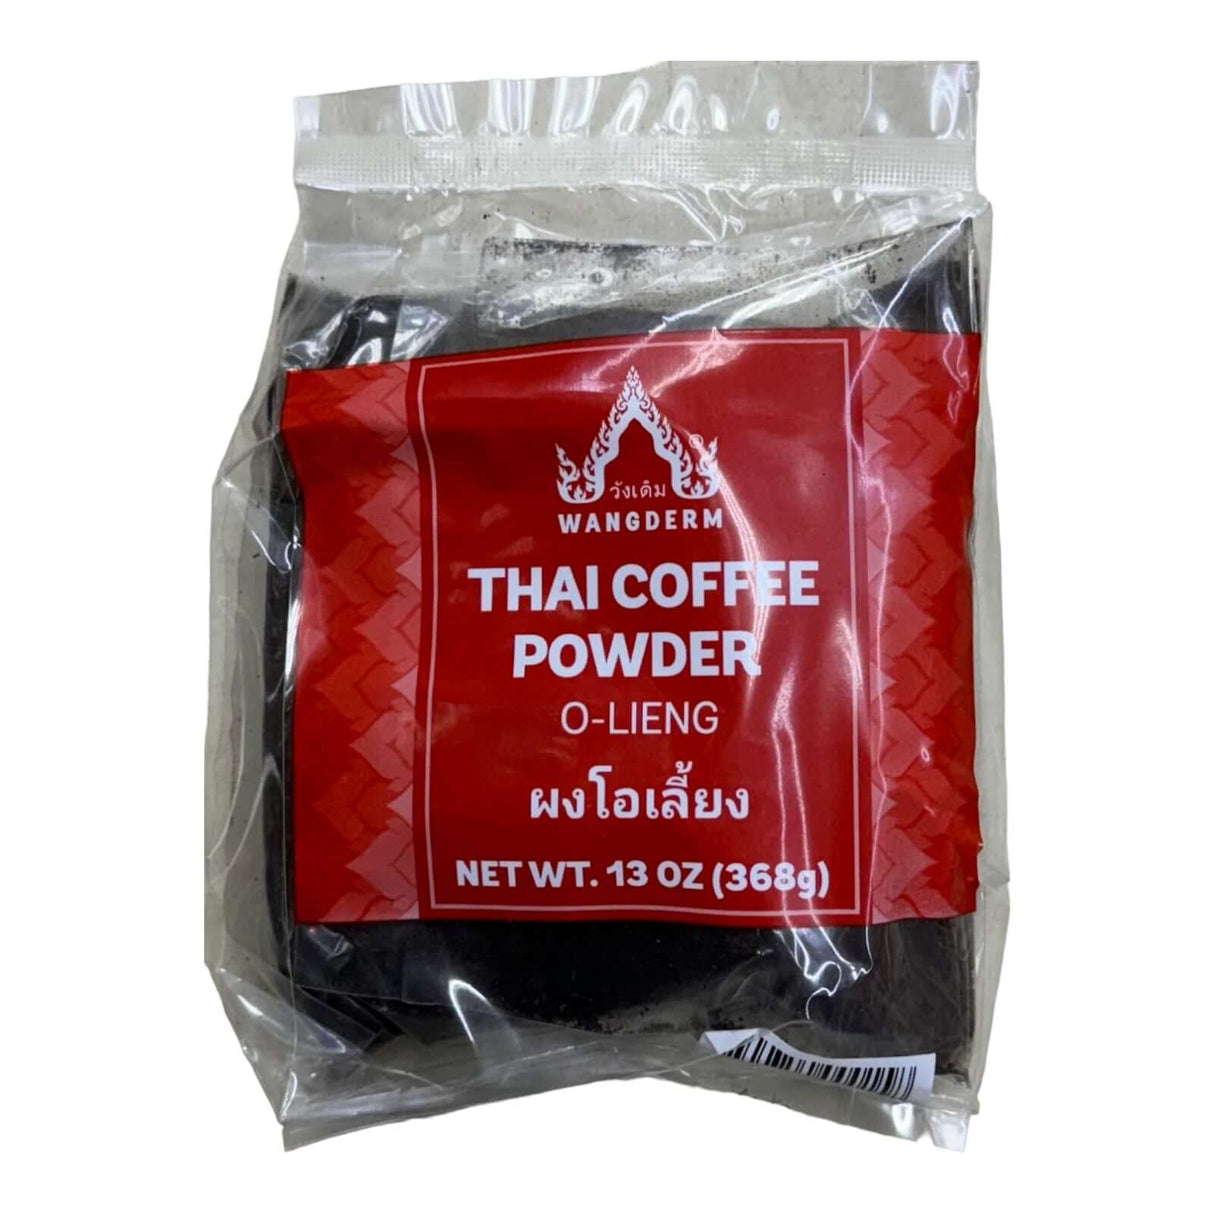 Wangderm Thai Coffee Powder